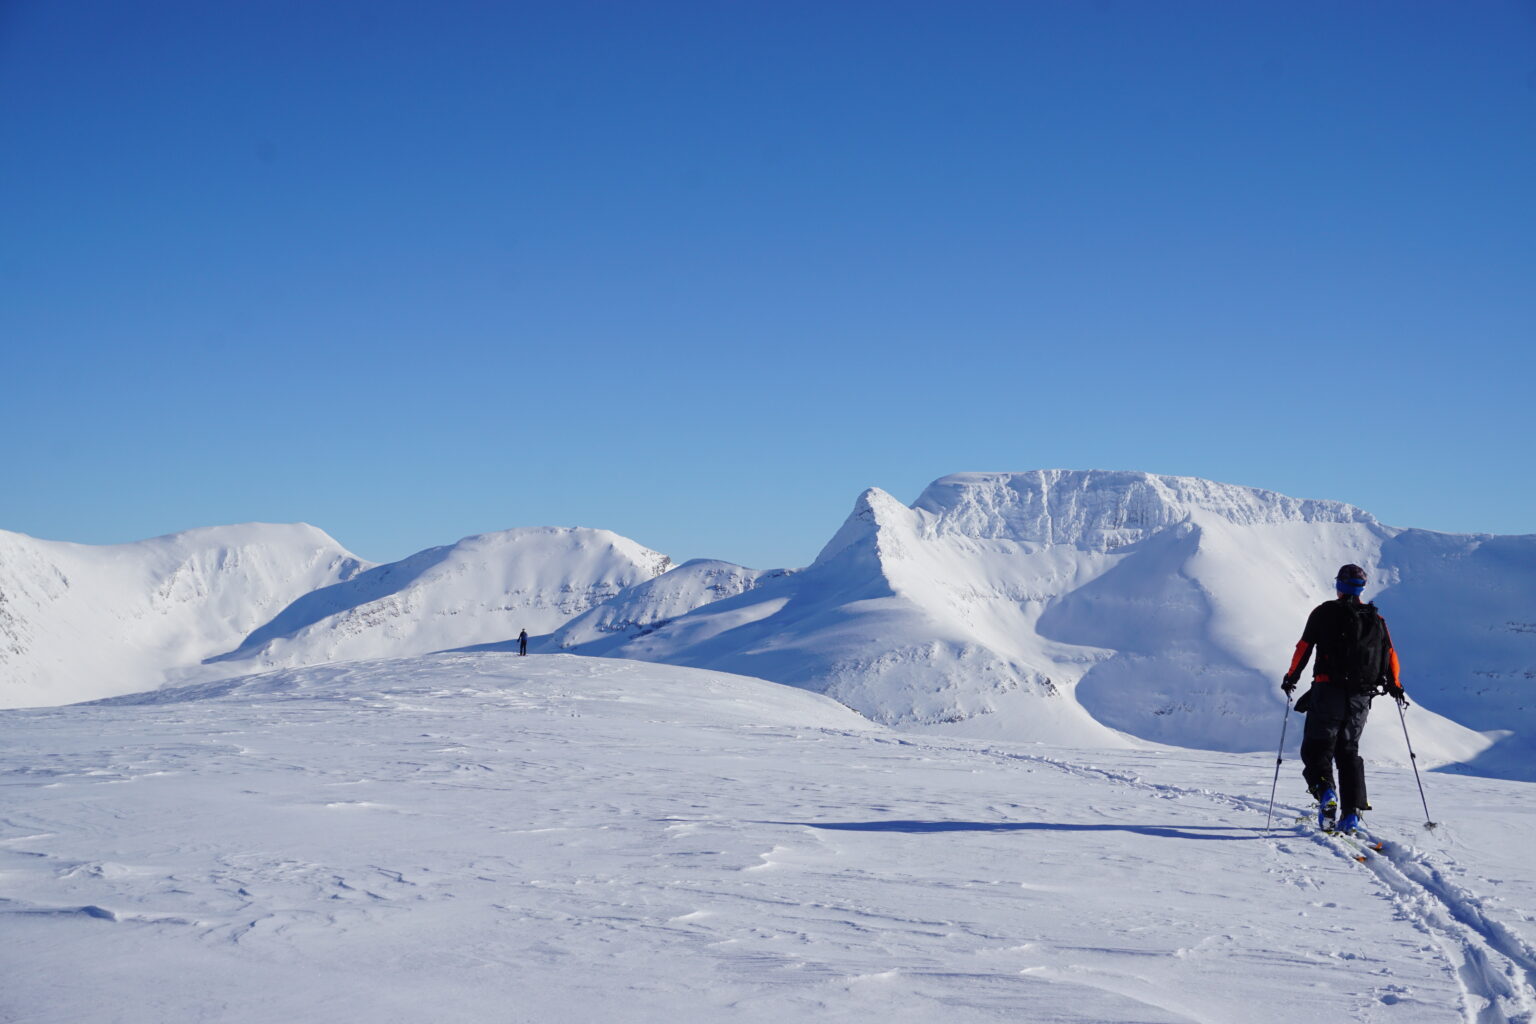 Arriving on the summit of Sjufjellet